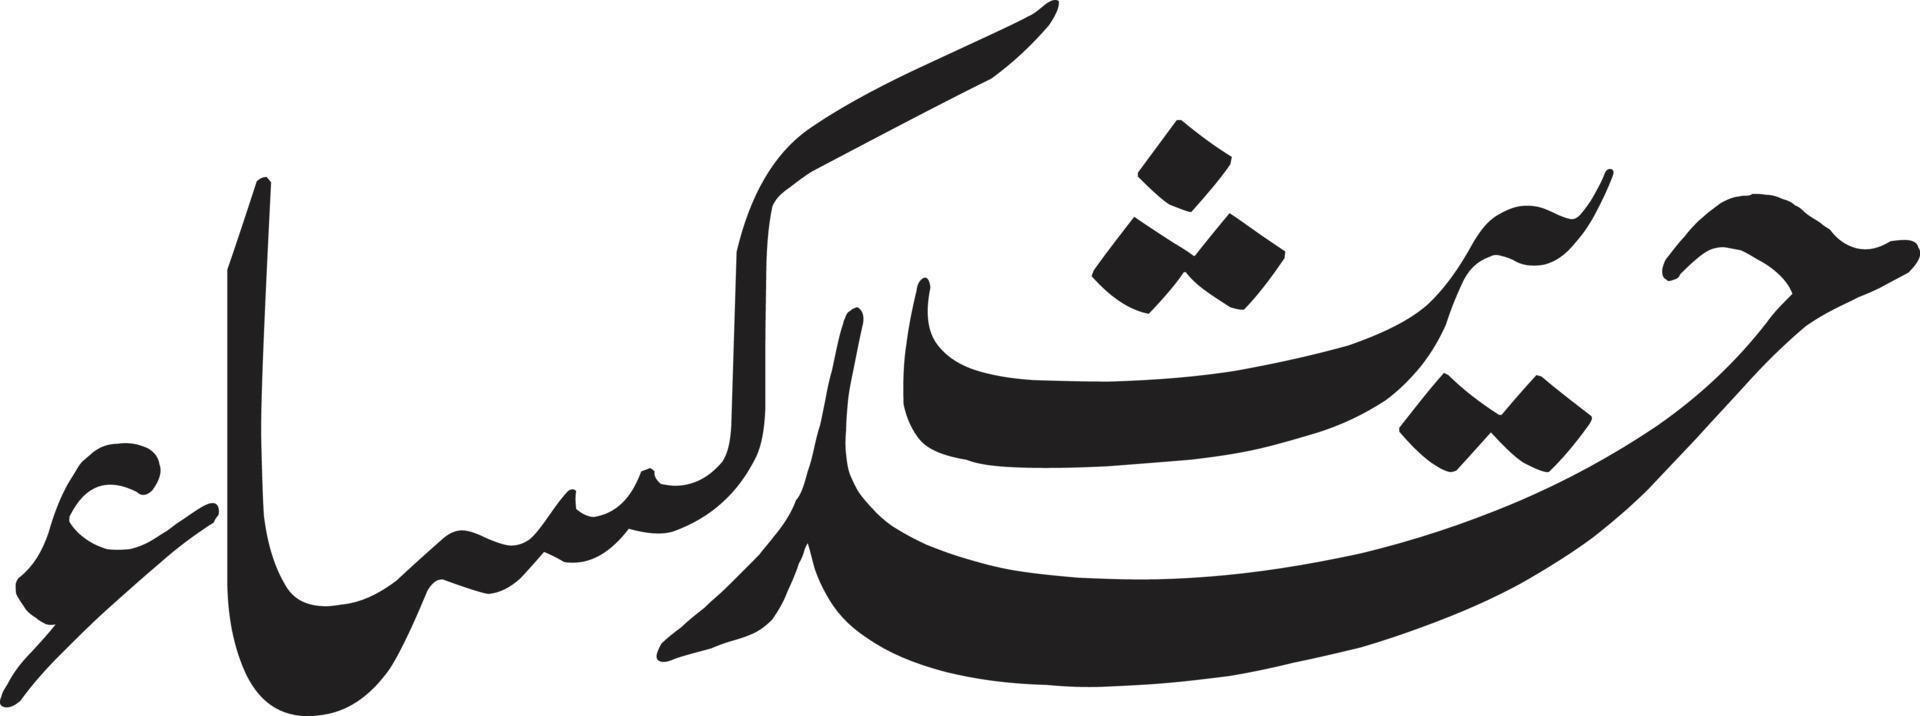 hdeess kisa titre calligraphie islamique vecteur gratuit